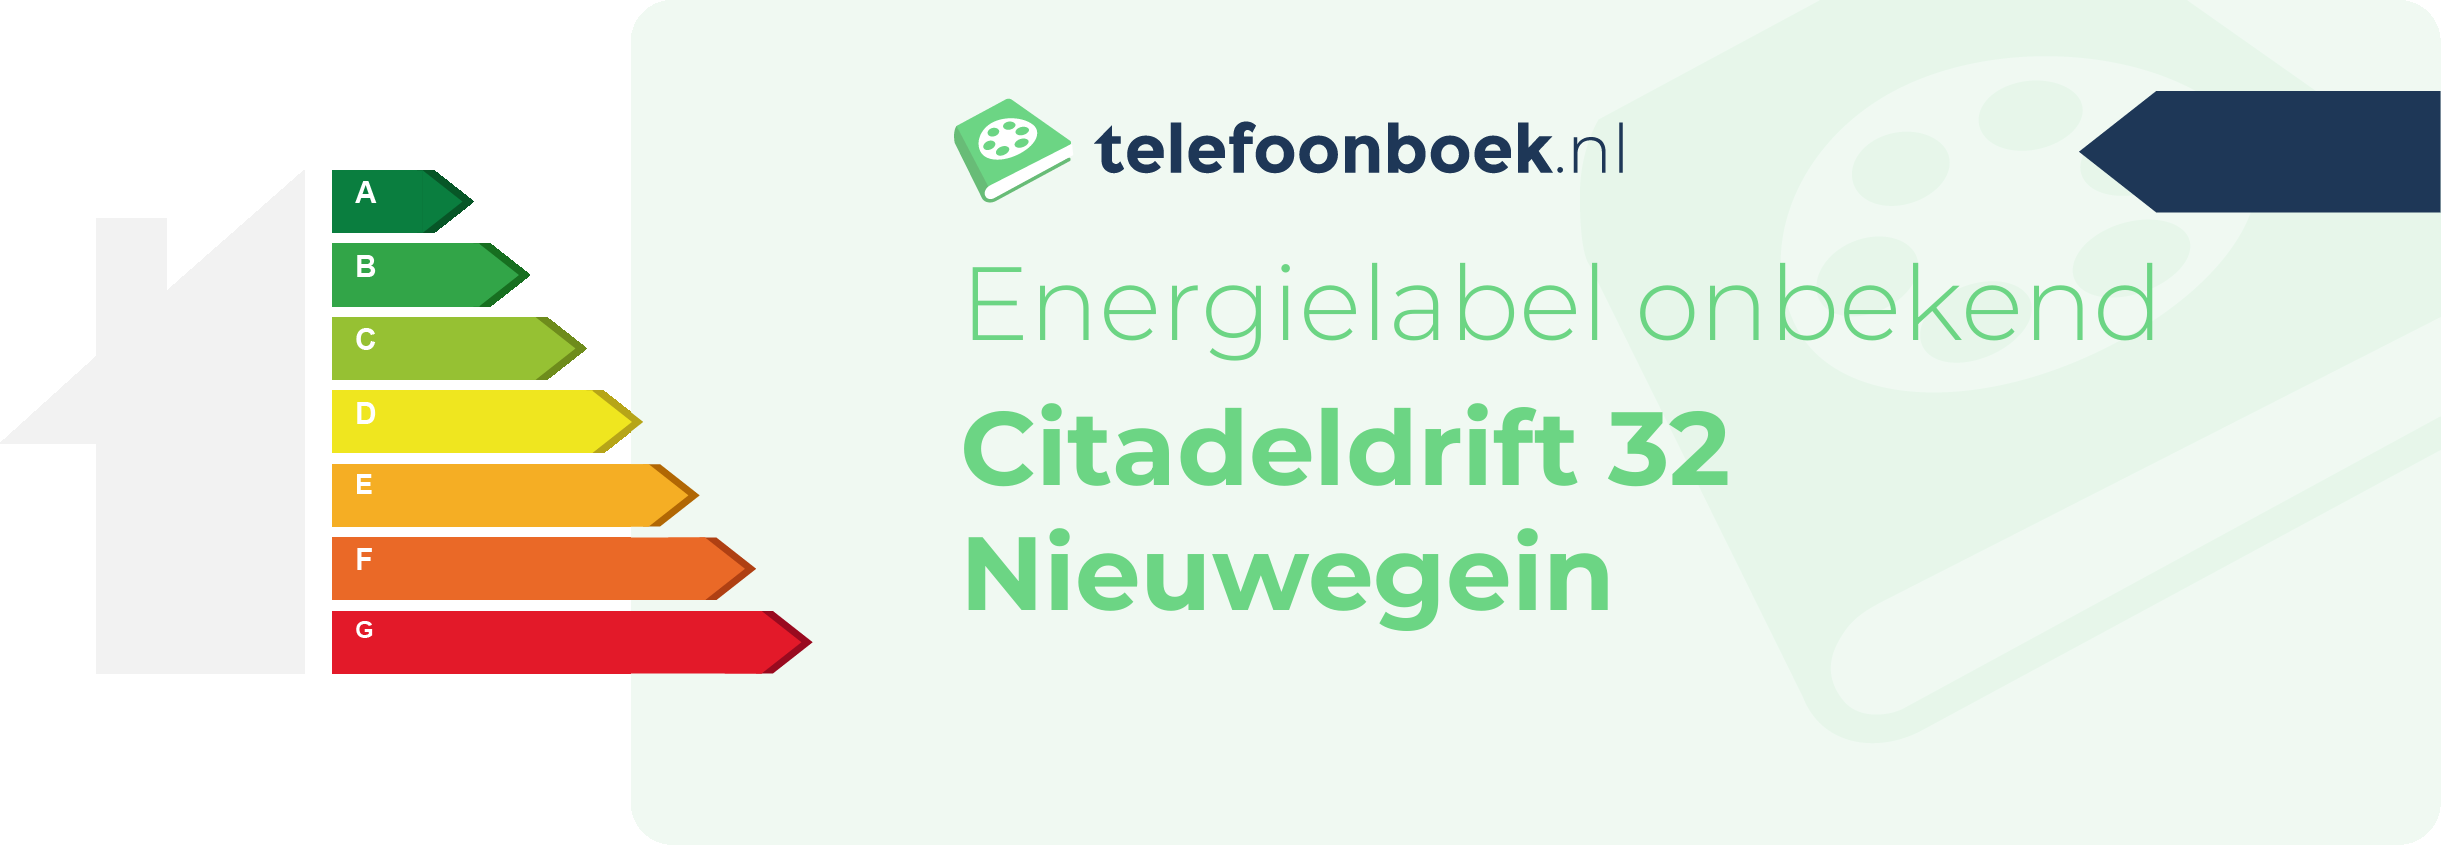 Energielabel Citadeldrift 32 Nieuwegein